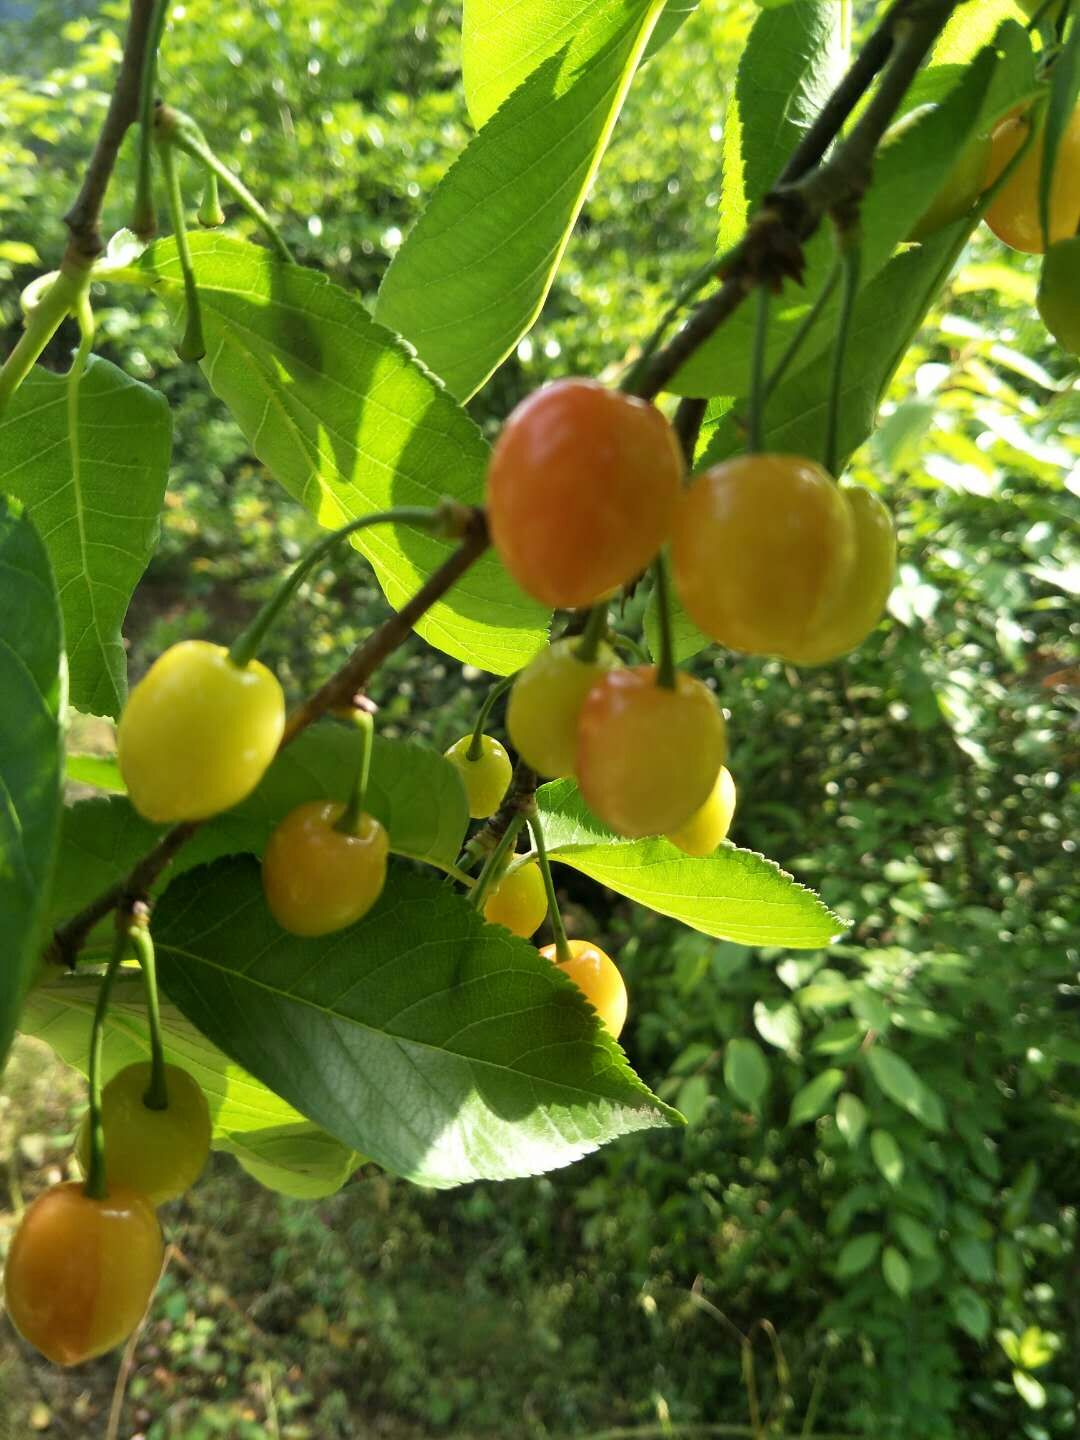 泰州市玛瑙红樱桃厂家玛瑙红樱桃种植、价格、批发、报价【兴化市猕梦园花木种植场】